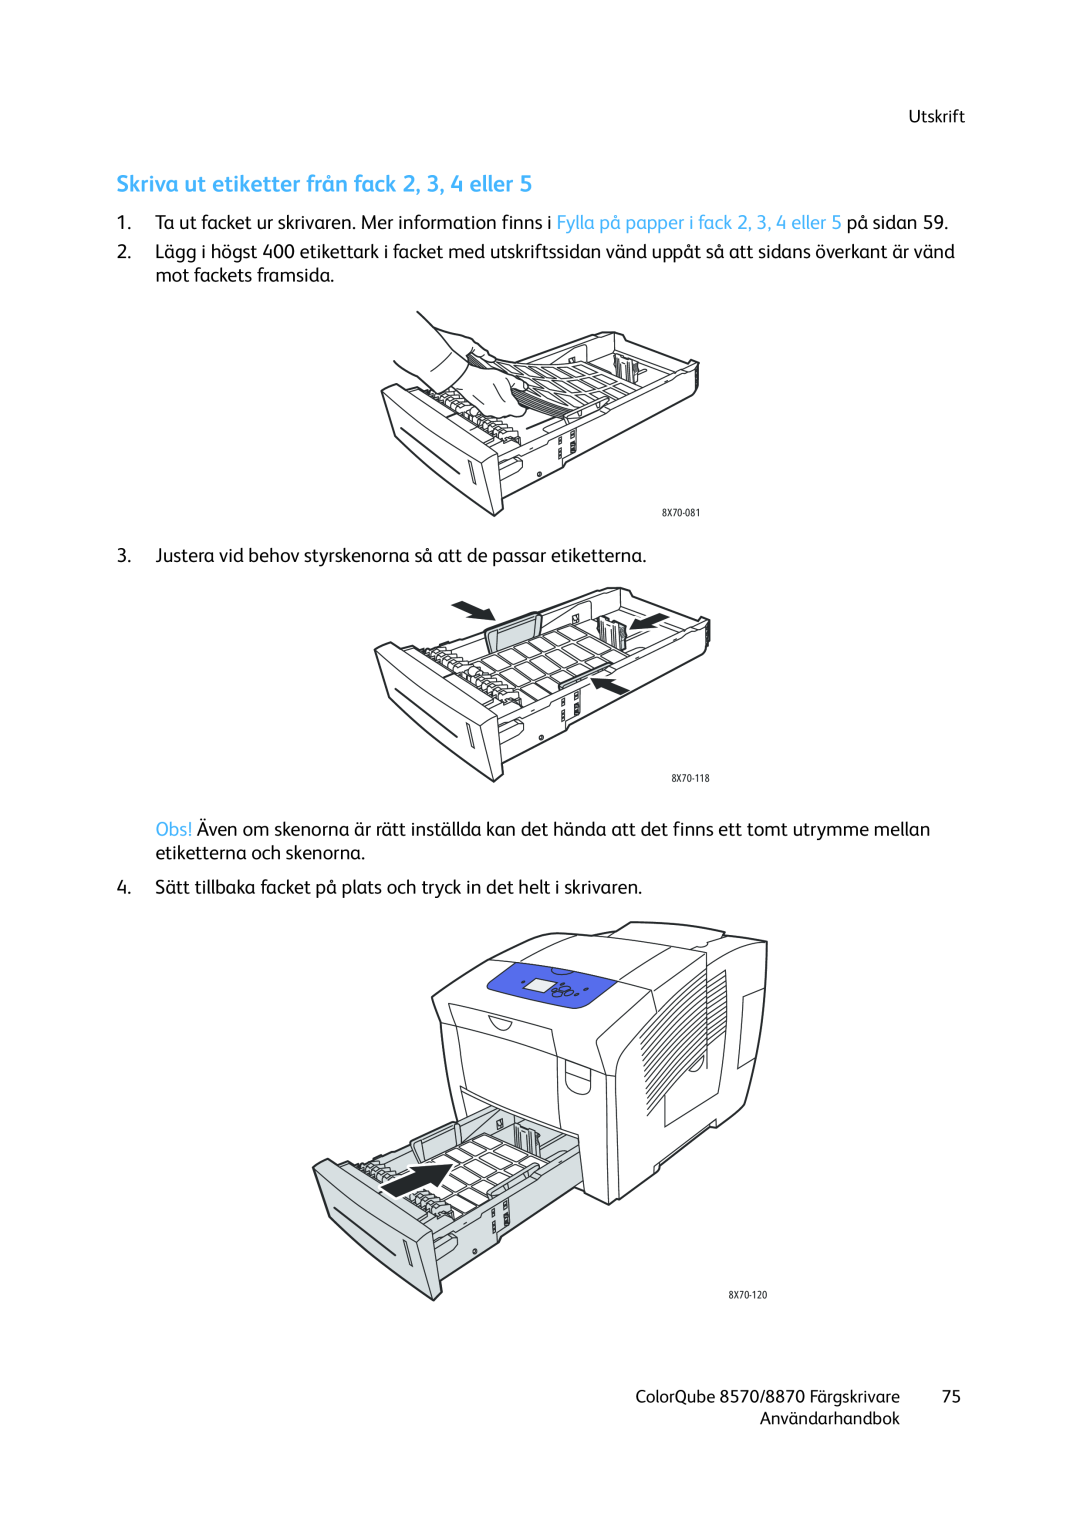 Xerox 8570 / 8870 manual Skriva ut etiketter från fack 2, 3, 4 eller, Utskrift, Användarhandbok 